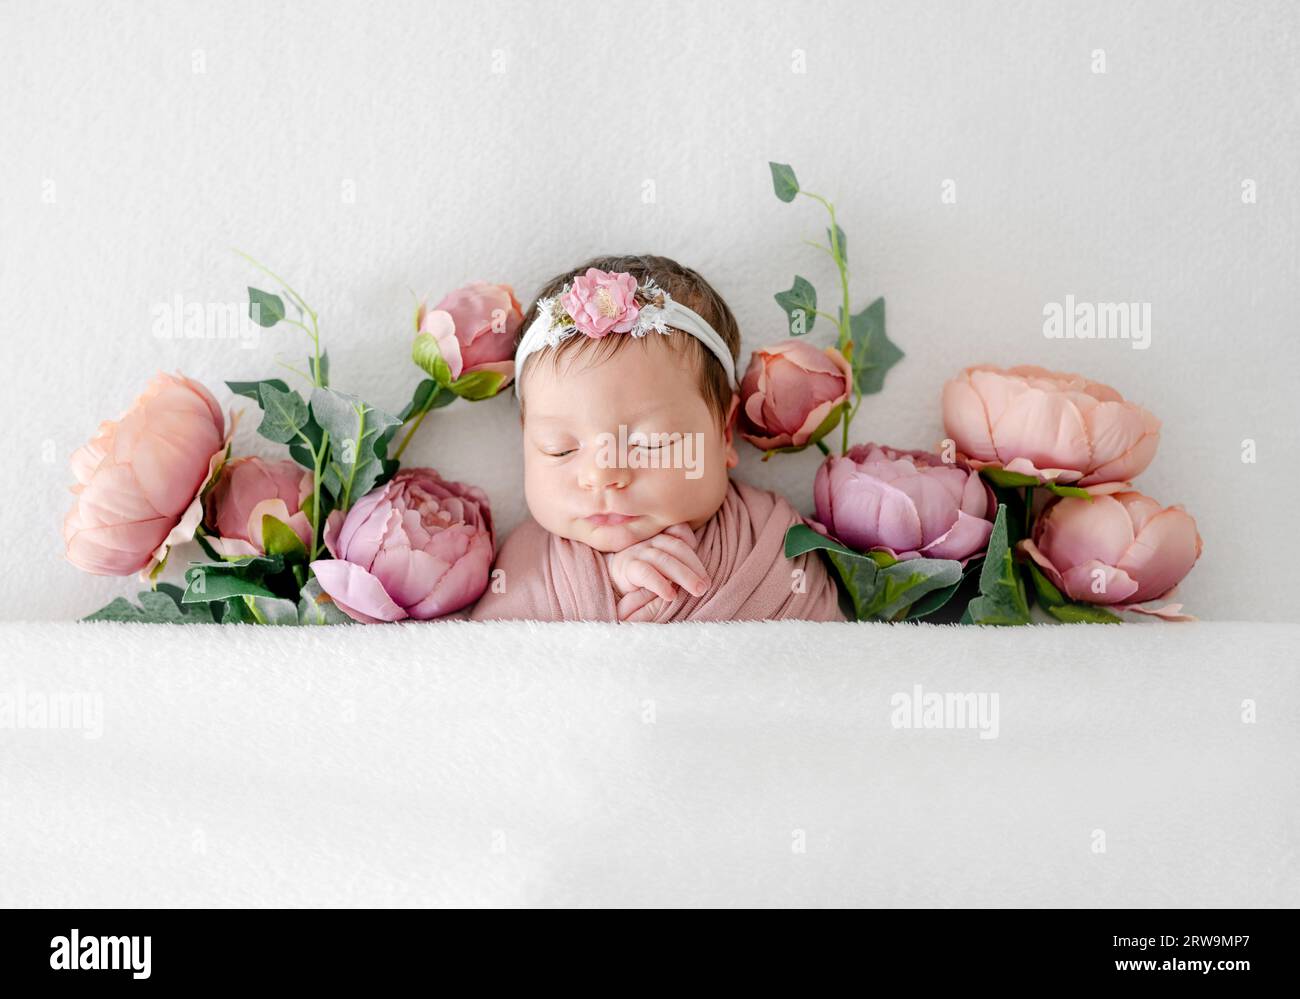 Entzückendes Neugeborenes, das in Pfingstrosenblüten schläft. Niedliches Kind, das in rosa Pflanzen schläft und einen Kranz trägt Stockfoto